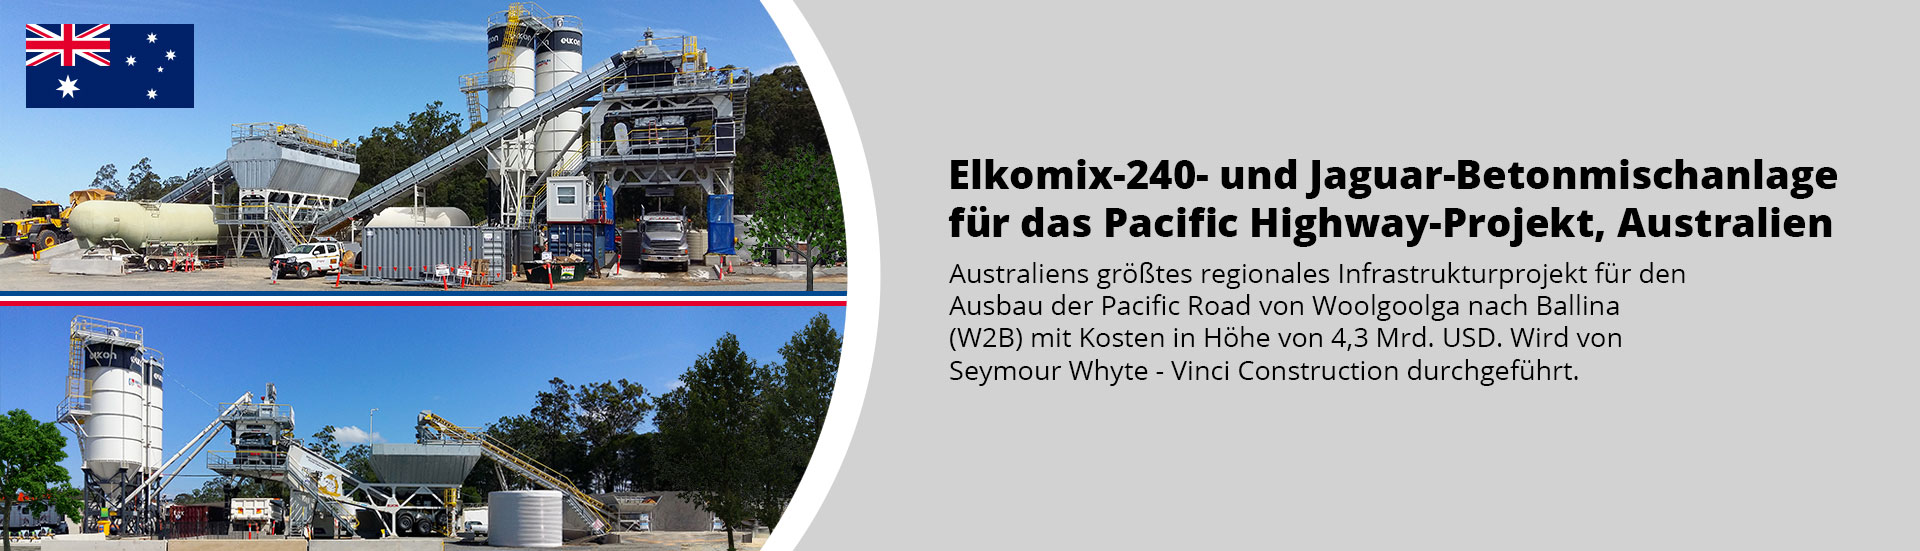 Elkomix-240- und Jaguar-Betonmischanlage für das Pacific Highway-Projekt, Australien